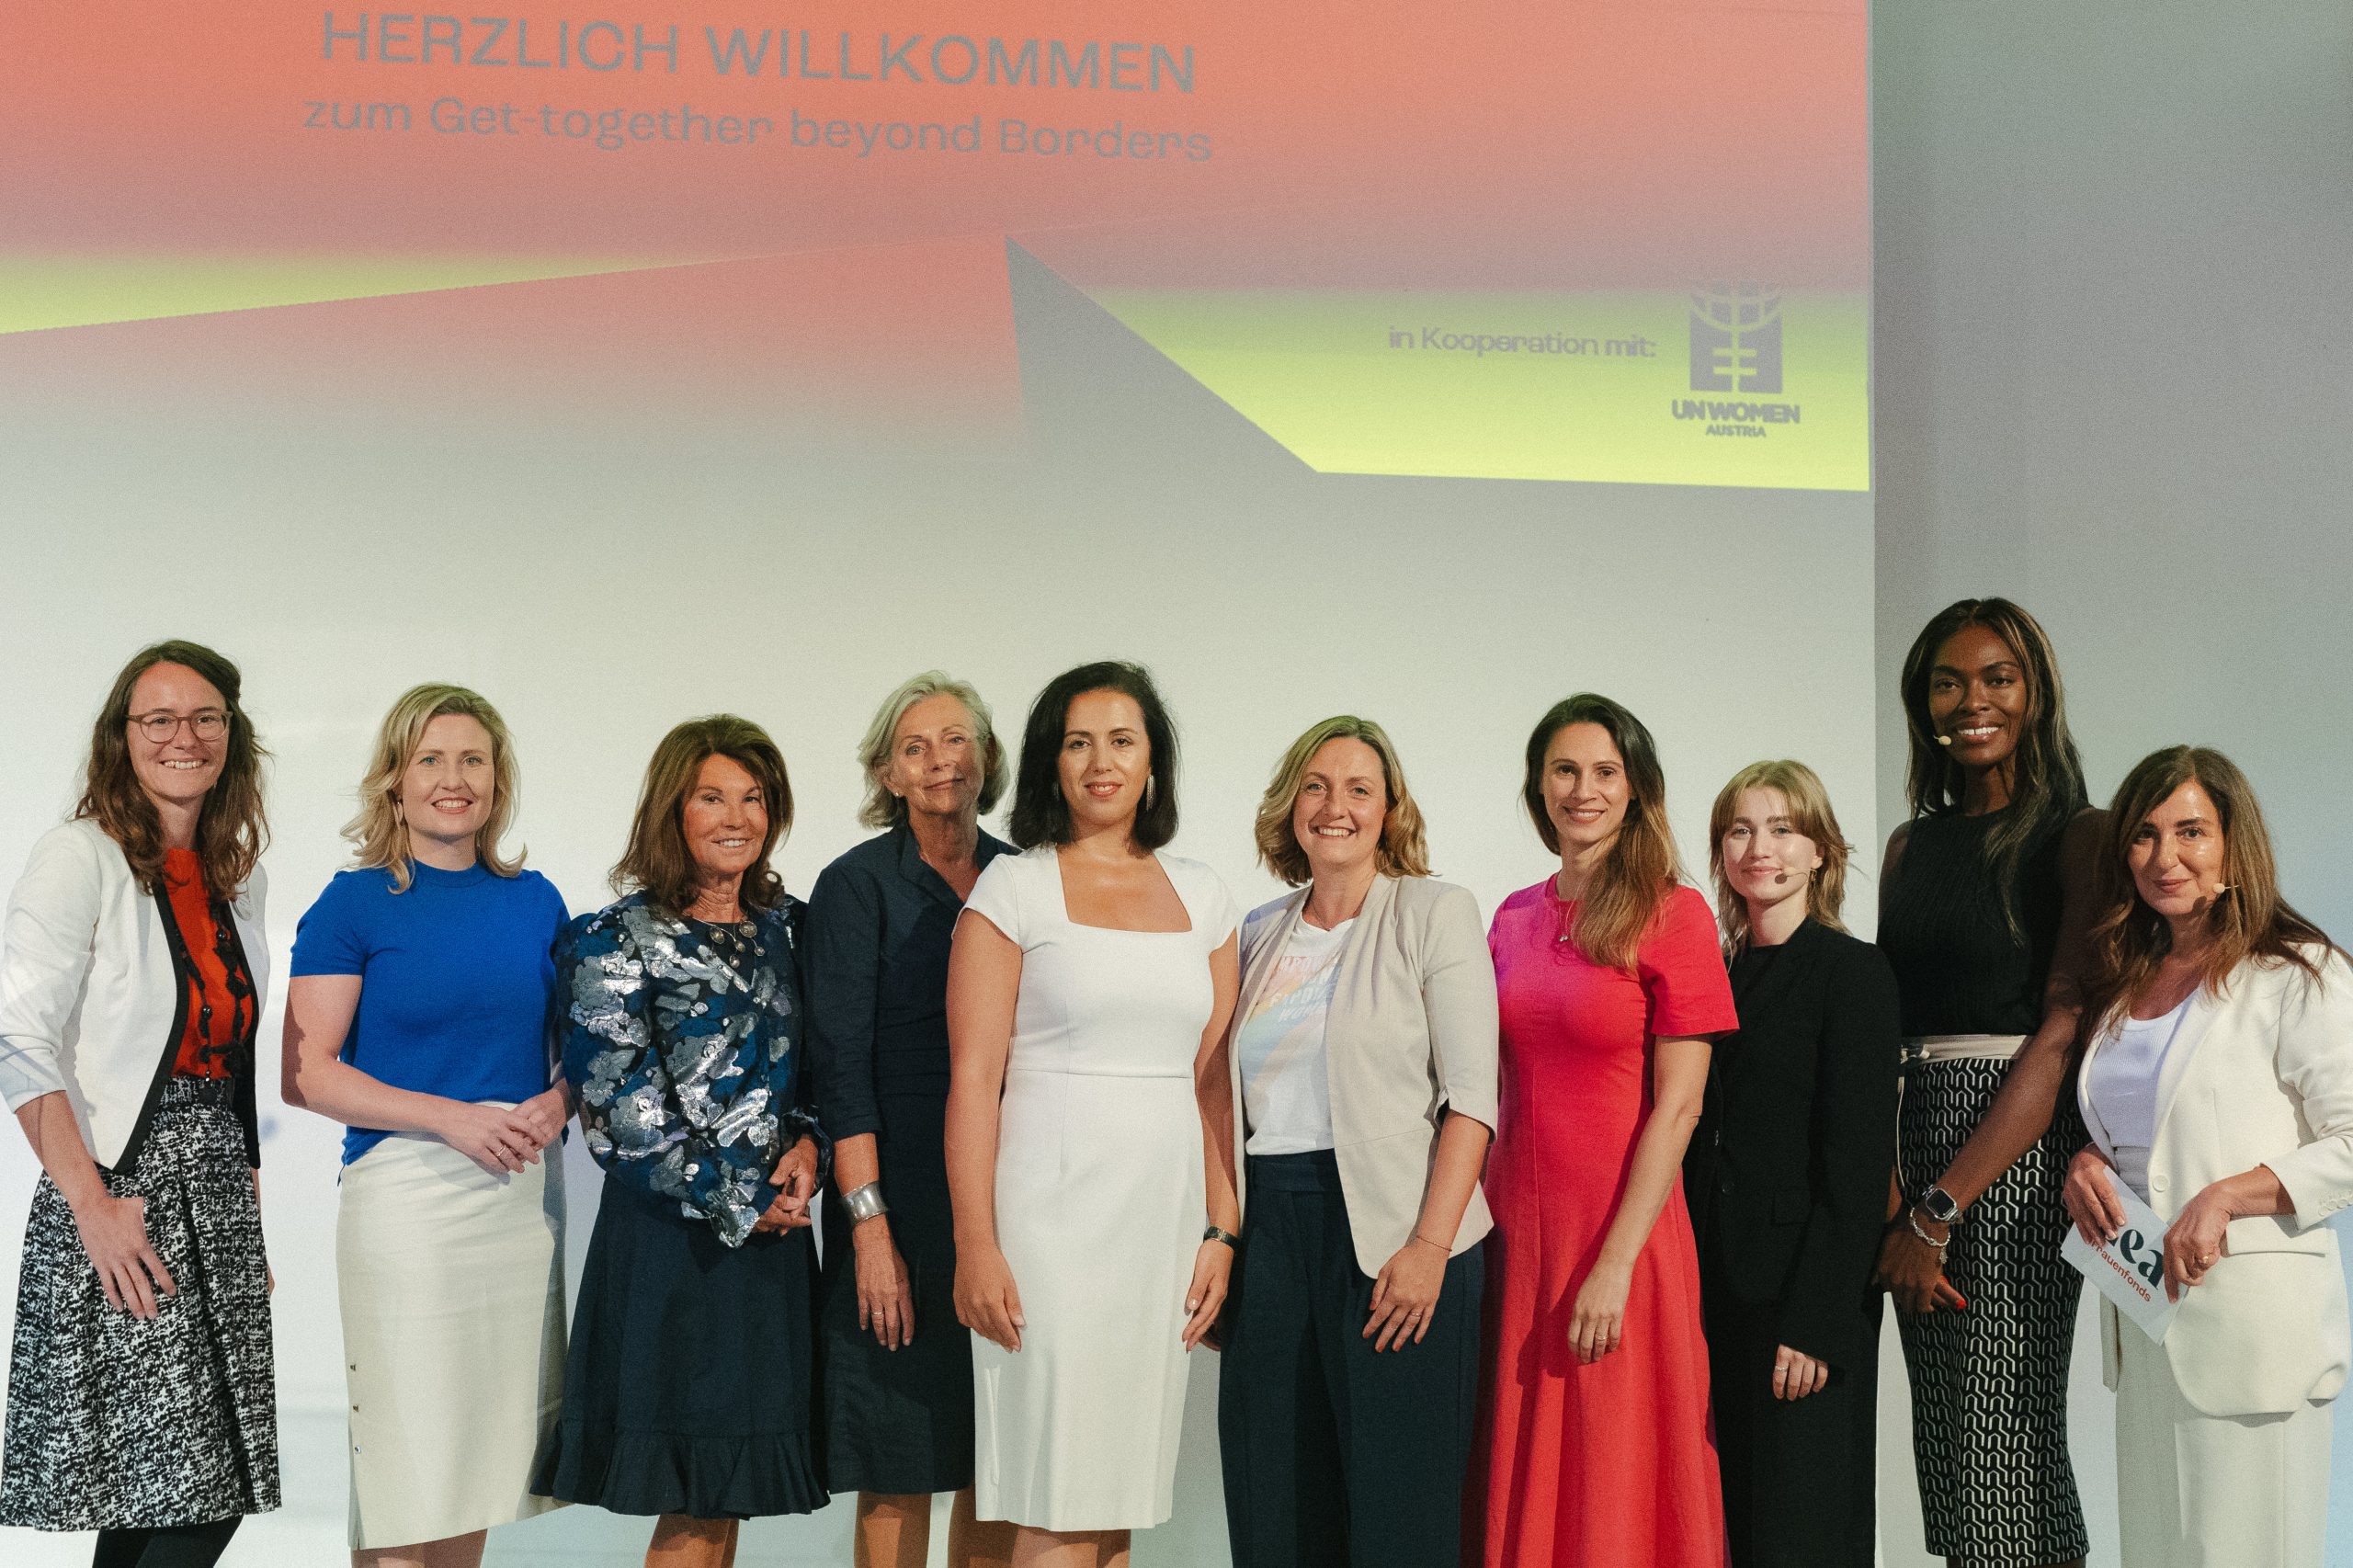 Der Österreichische Frauenfonds LEA lud zum 1. internationalen Get-together